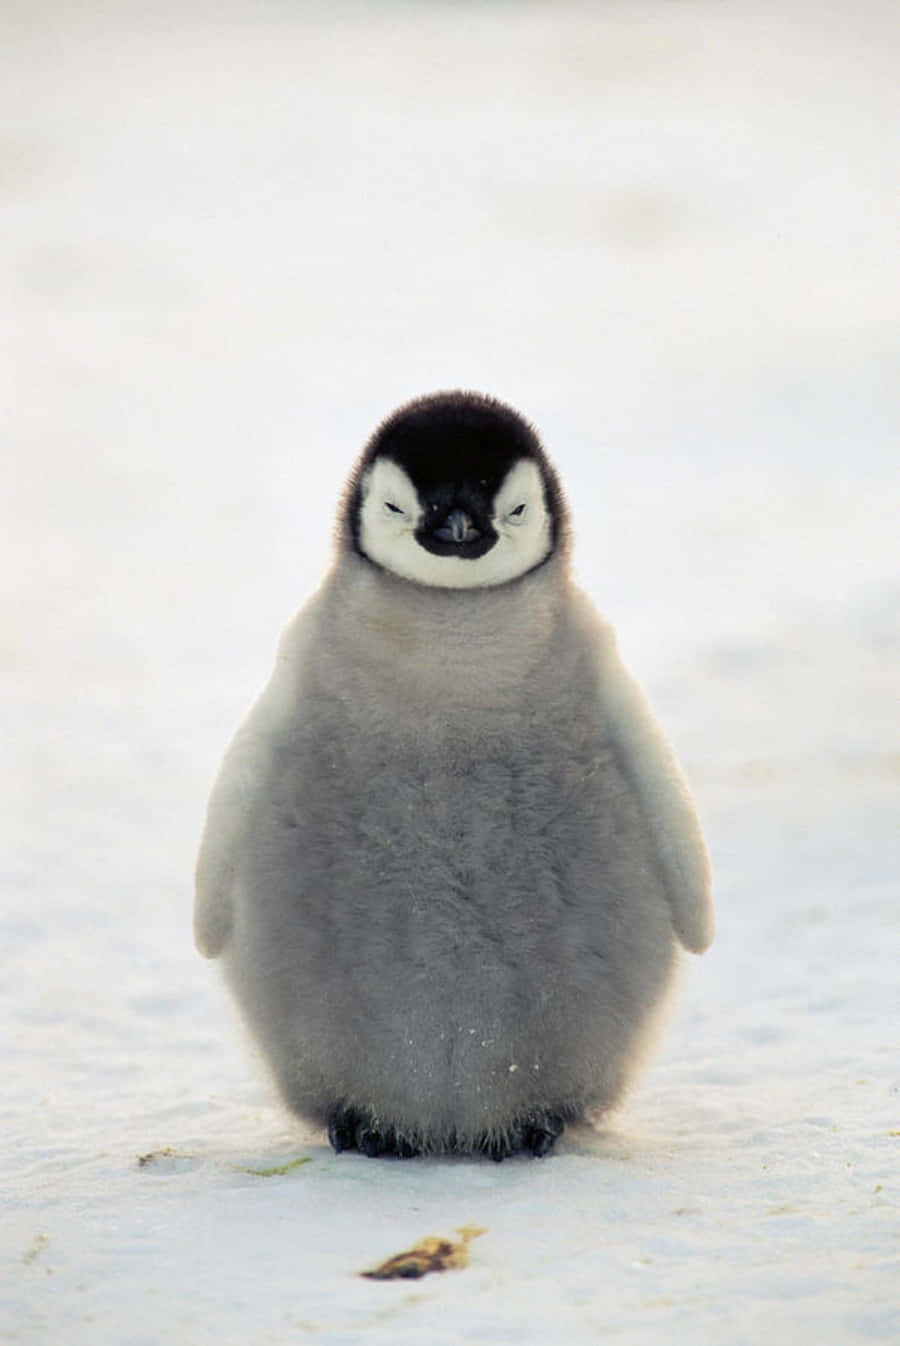 Adorabileimmagine Minimalista Di Un Cucciolo Di Pinguino.